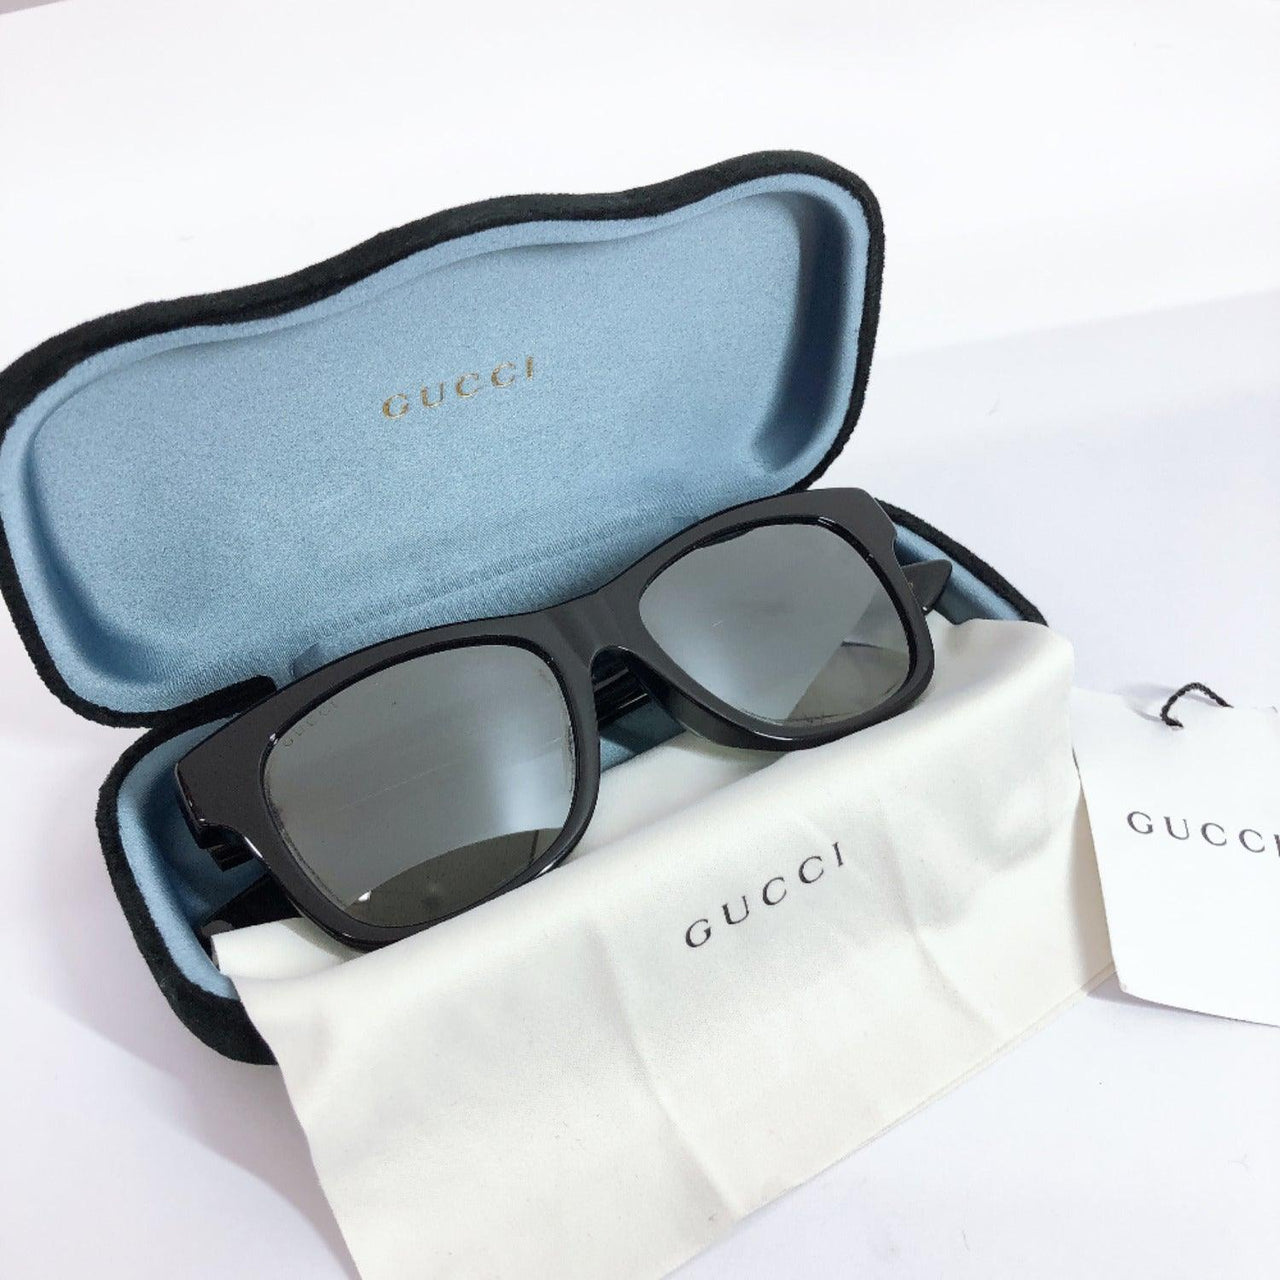 gucci used sunglasses